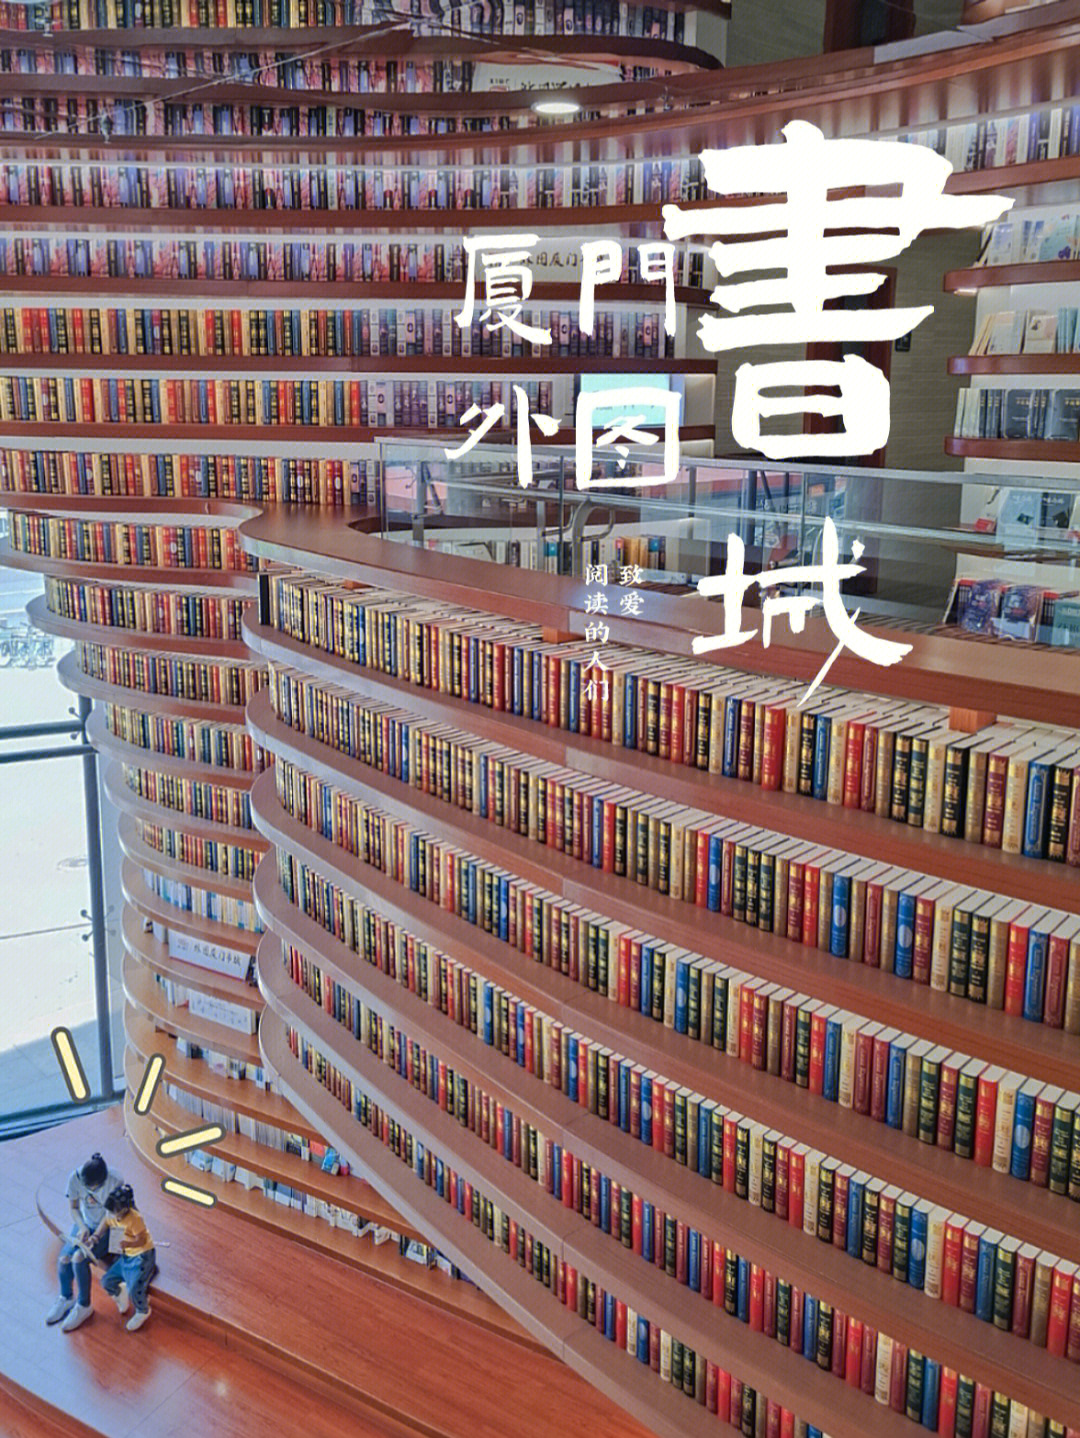 98厦门外图书城作为厦门zui大的书城,占地面积2万平方米,地大物全